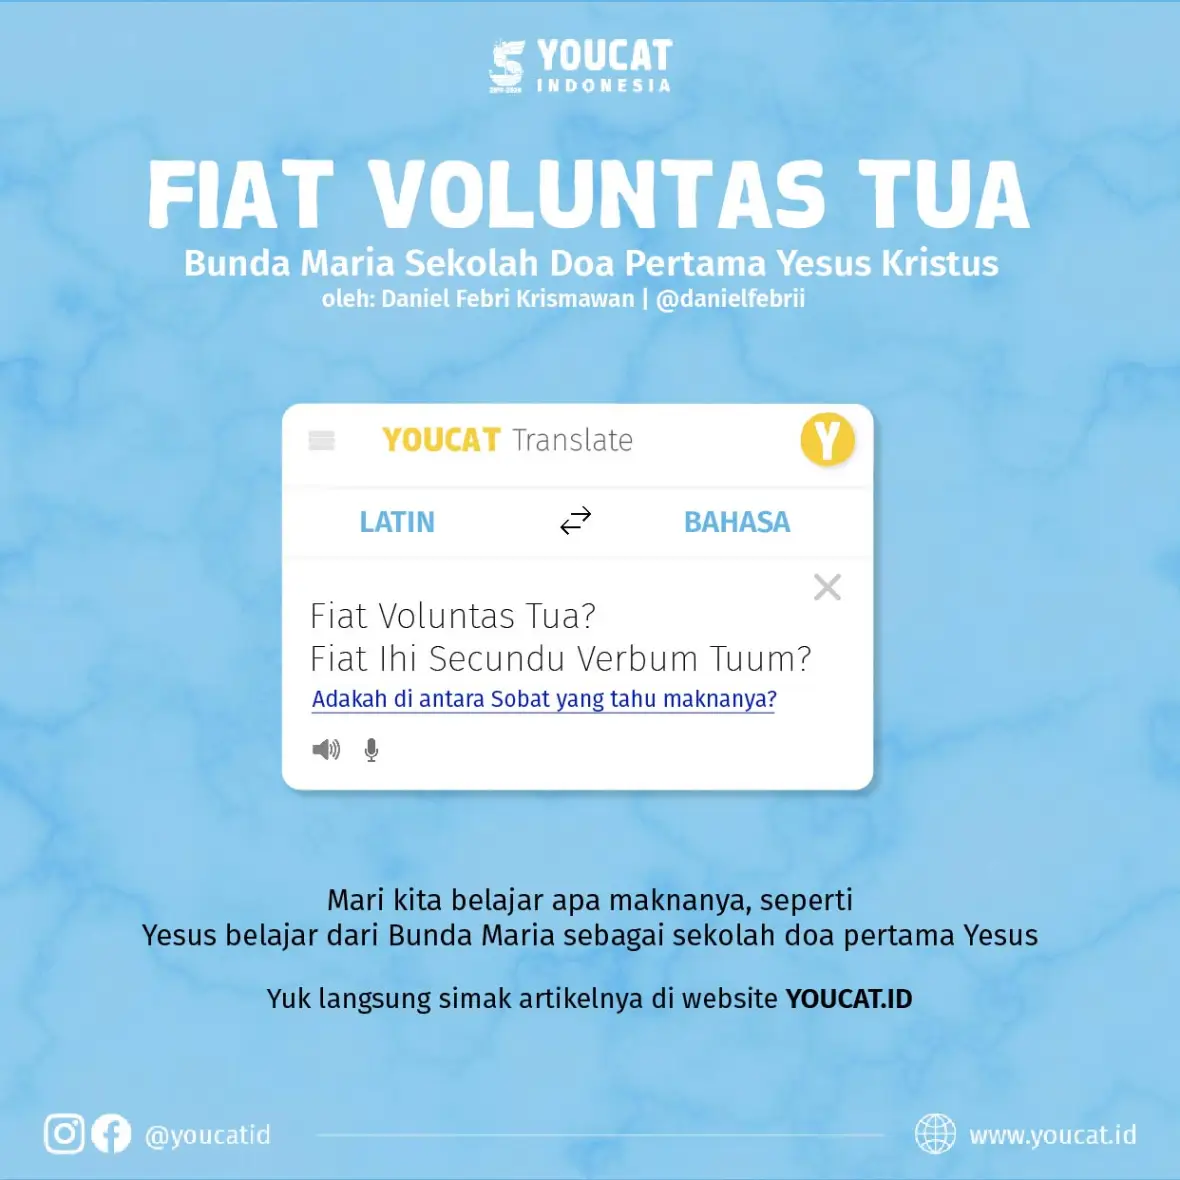 FIAT VOLUNTAS TUA YOUCAT Indonesia